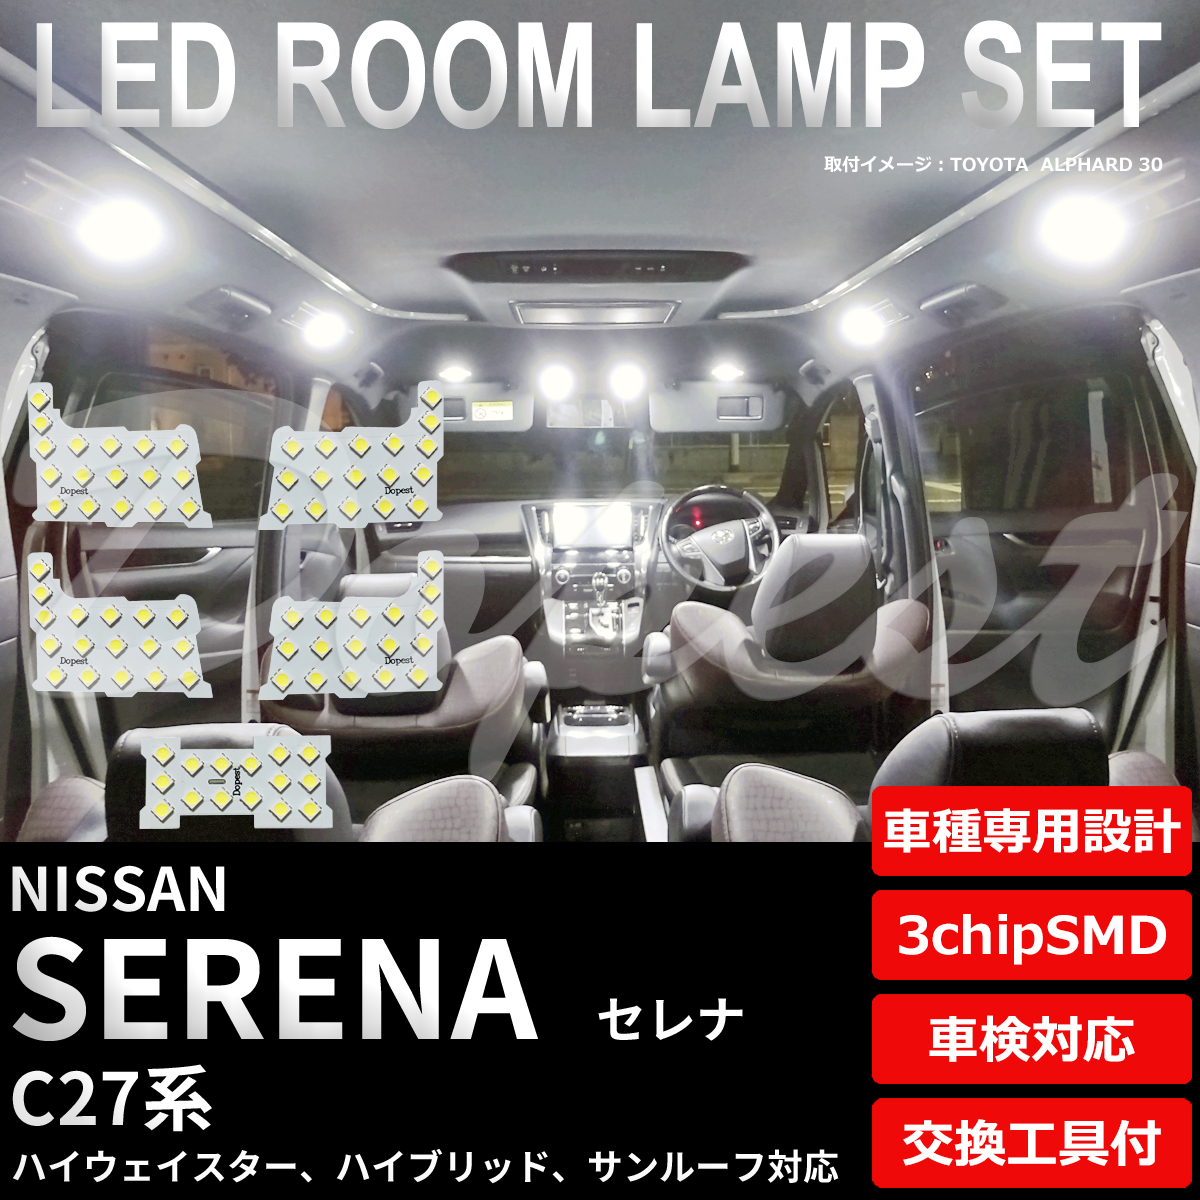 セレナ LEDルームランプセット C27系 車内灯 室内灯